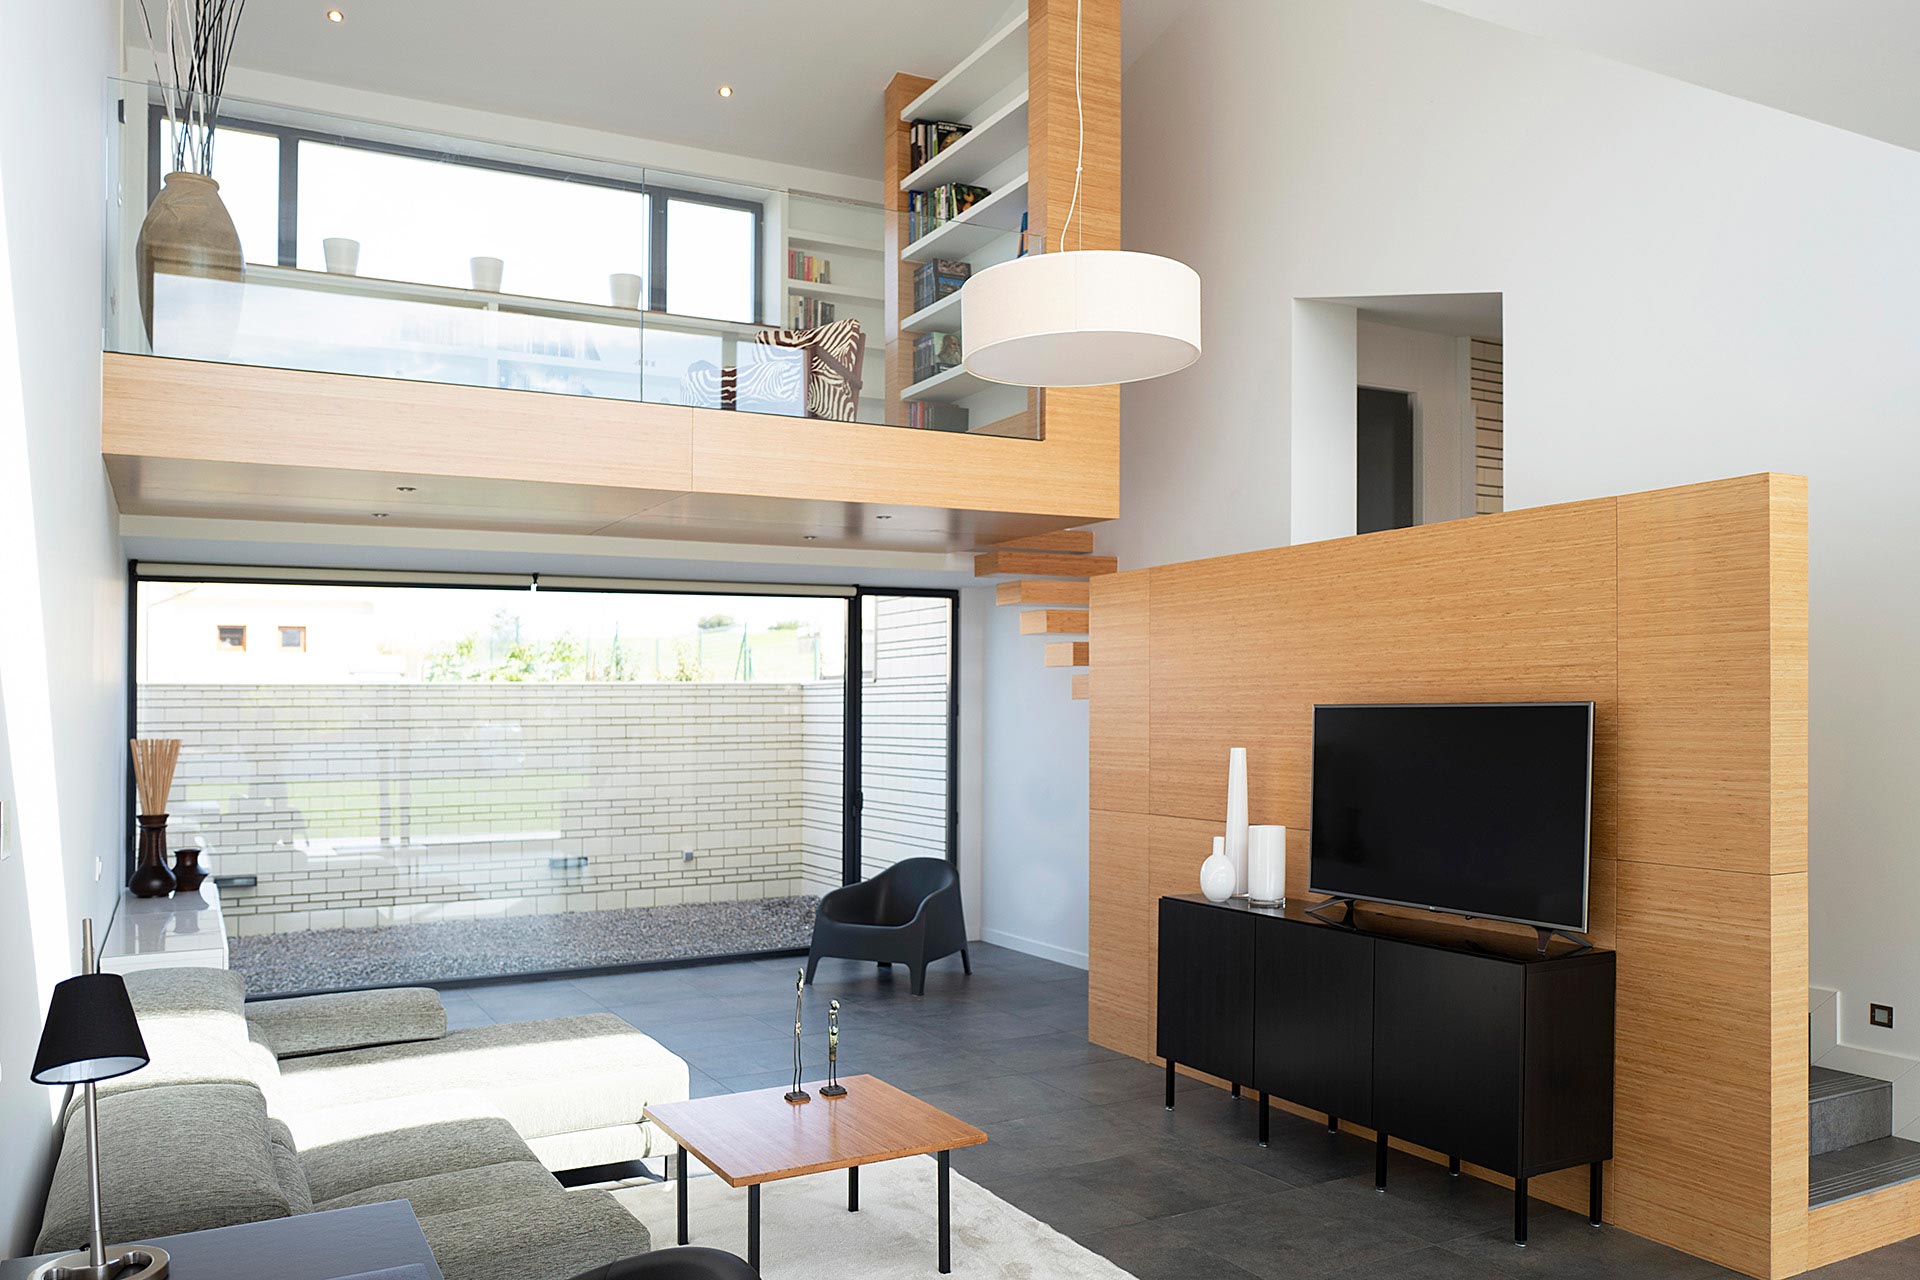 Salón en doble altura en casa moderna diseñada por Moah Arquitectos en Villaverde, Cantabria